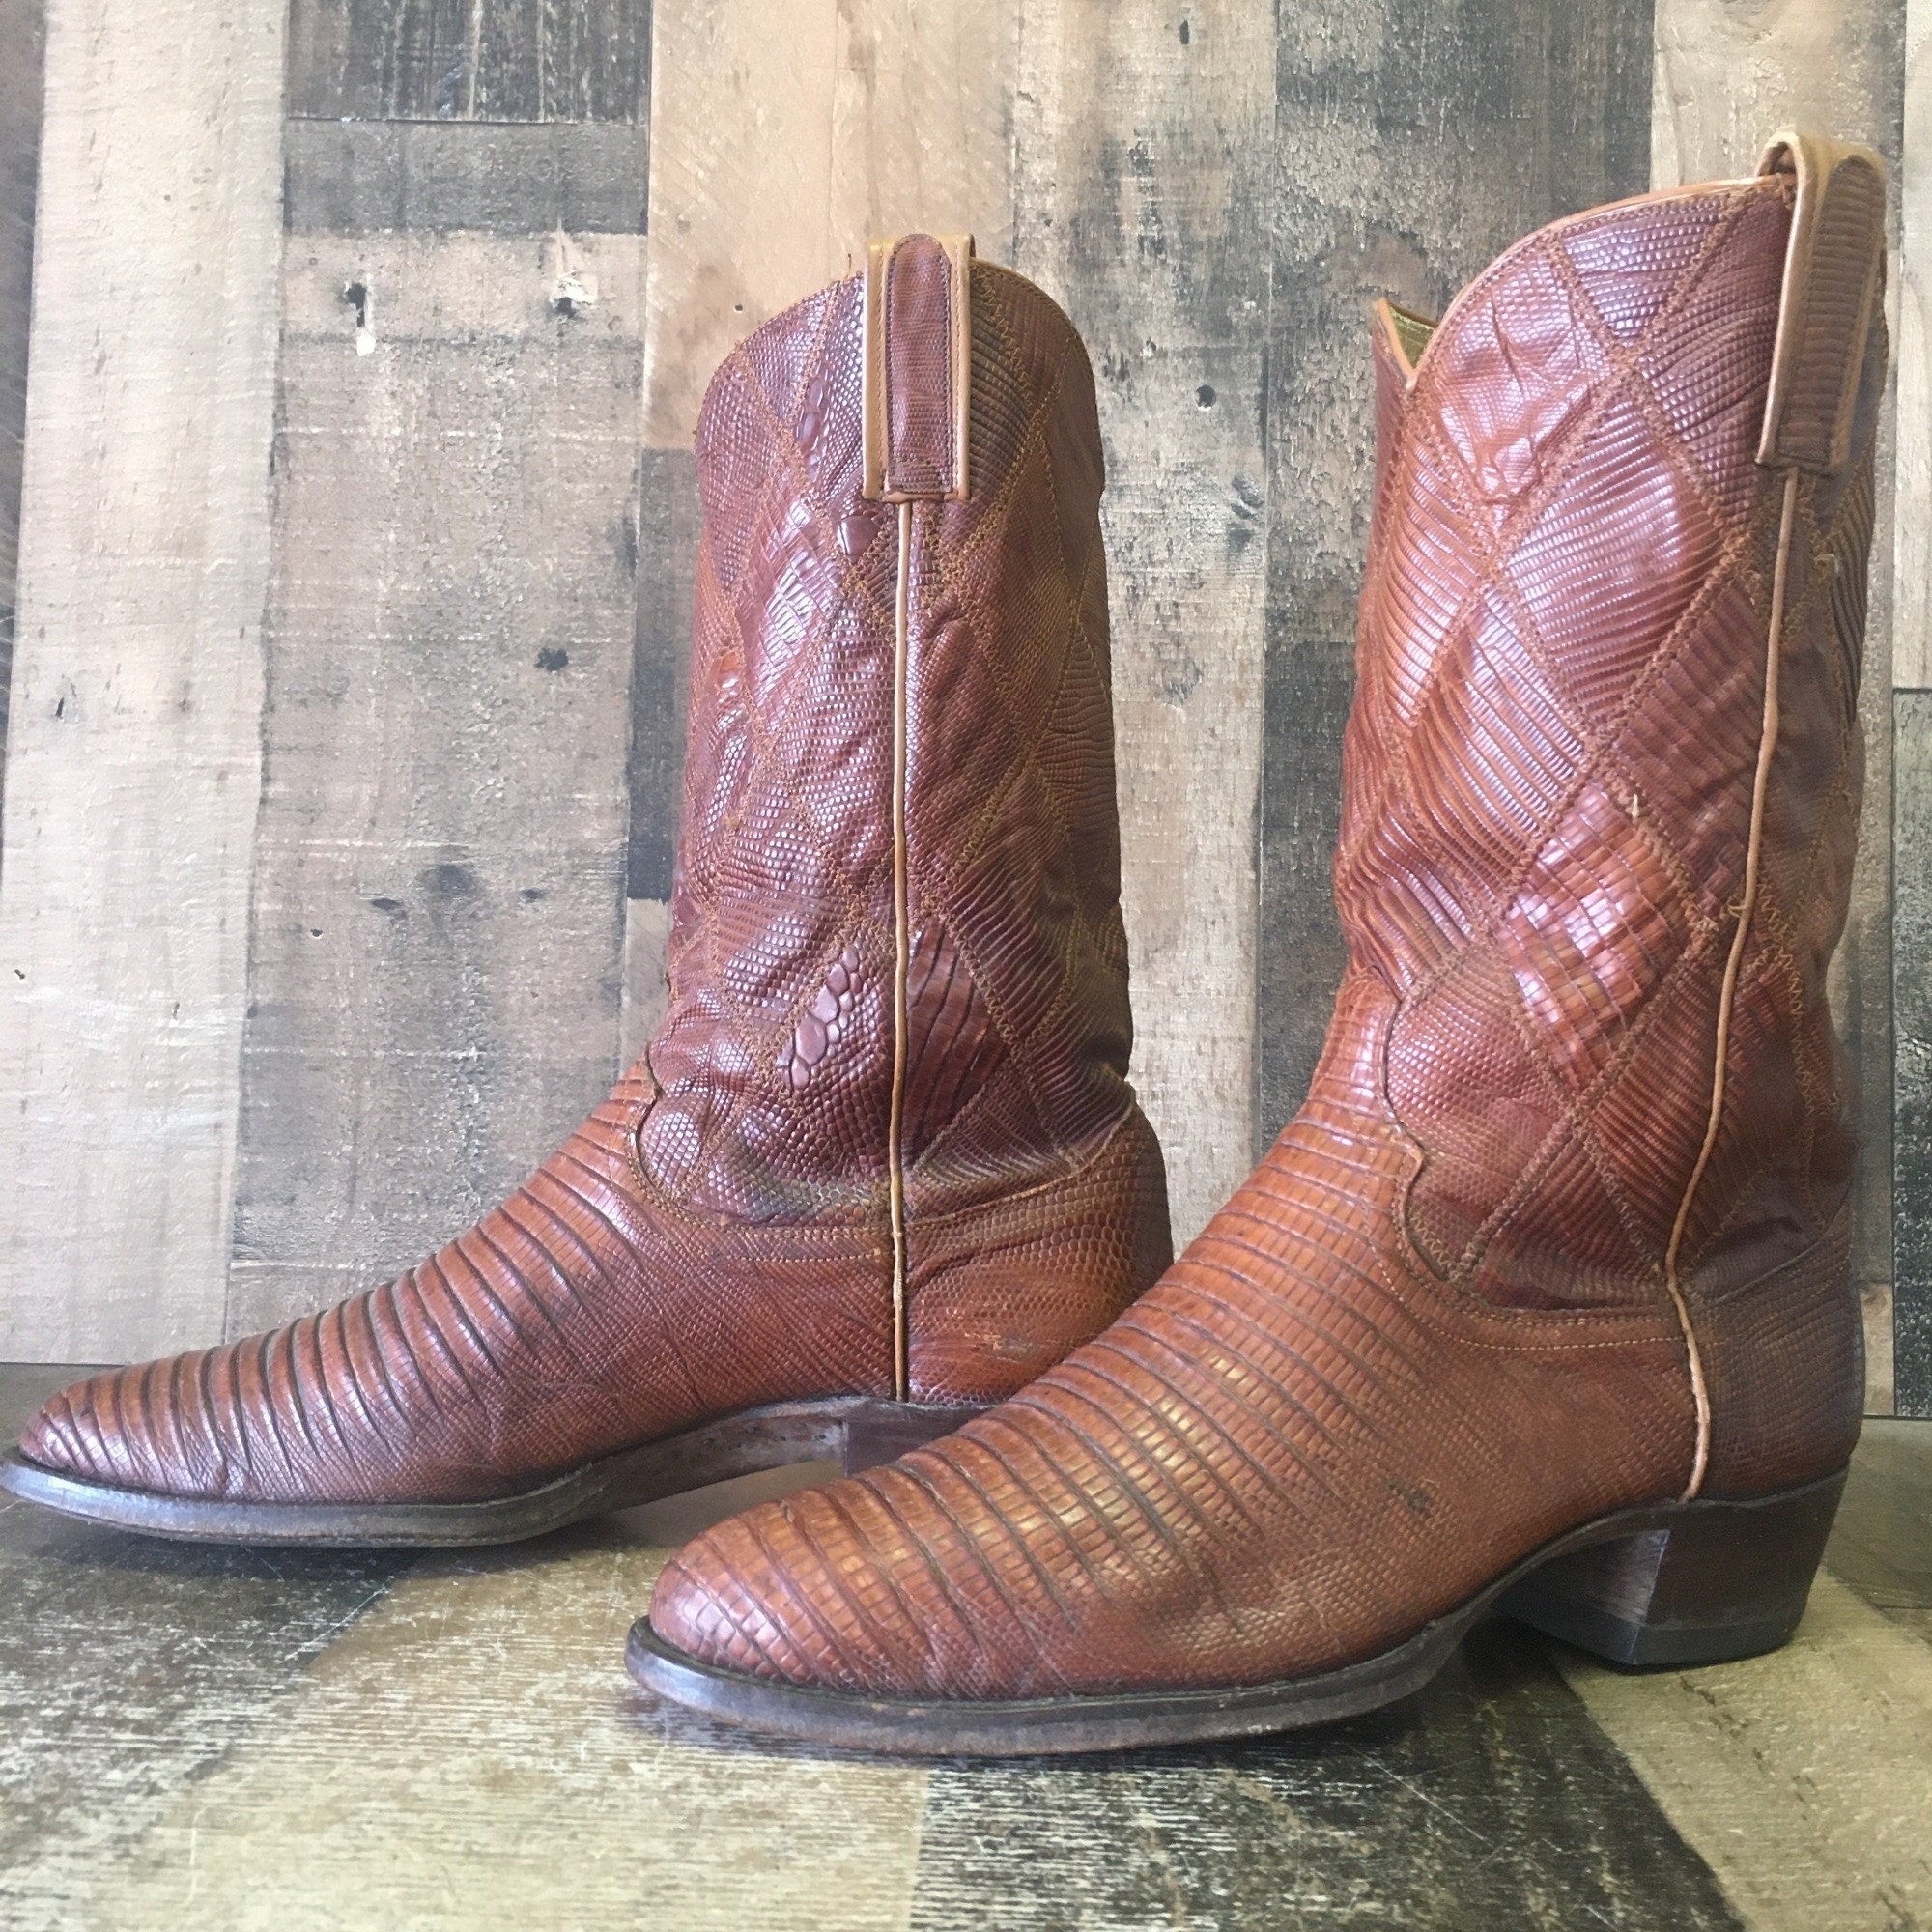 Tri Star Men's 12 Rustic Ostrich Print Cowboy Boot - Cognac